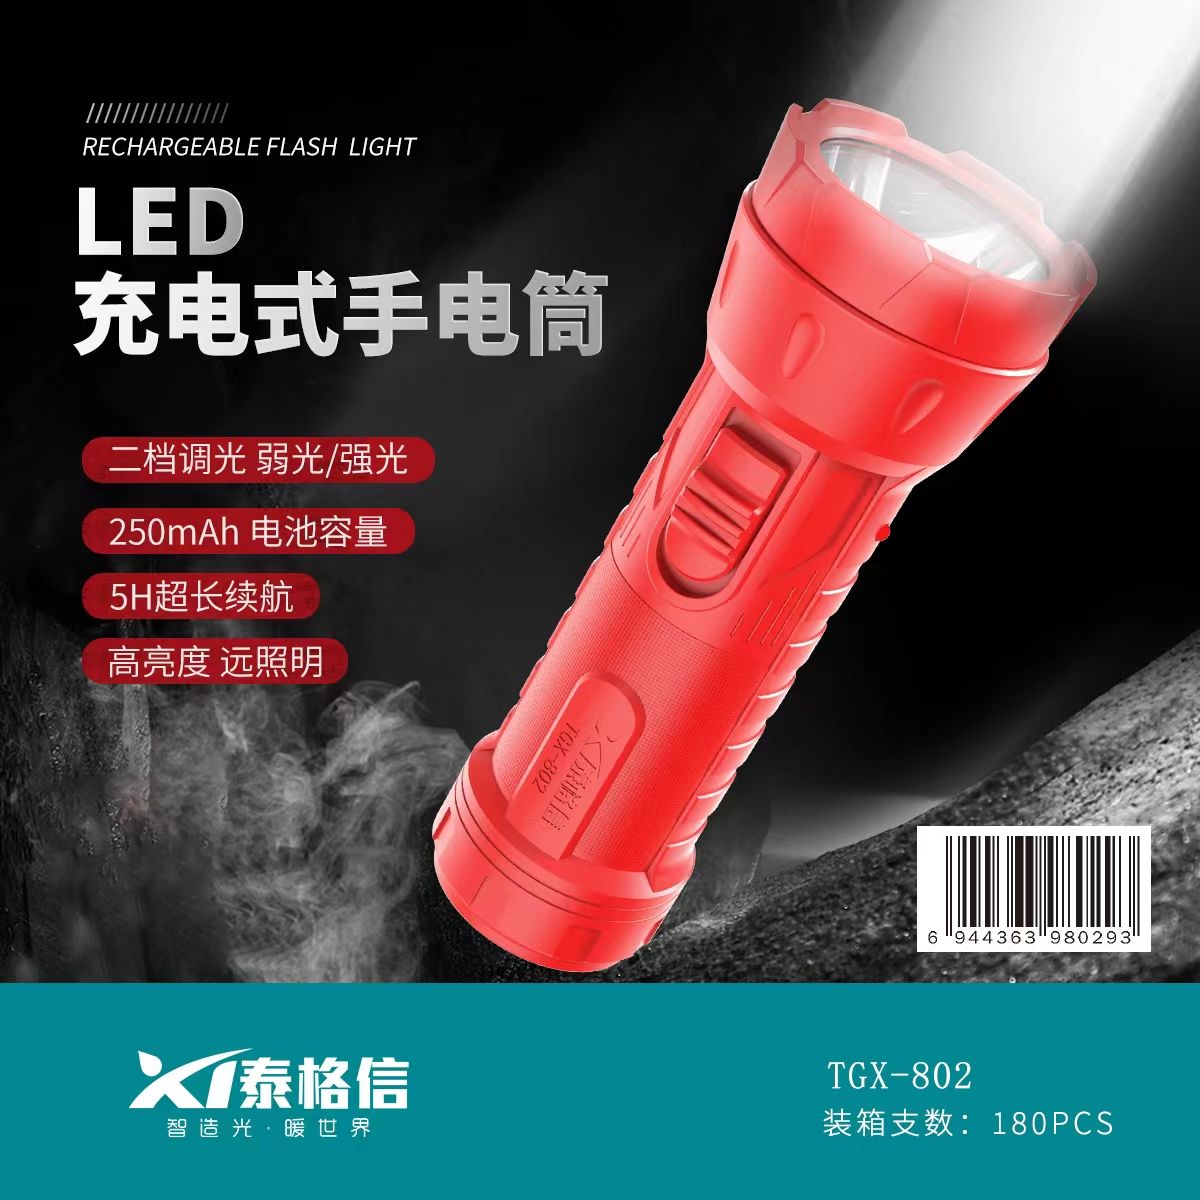 LED手电筒/充电式手电筒产品图